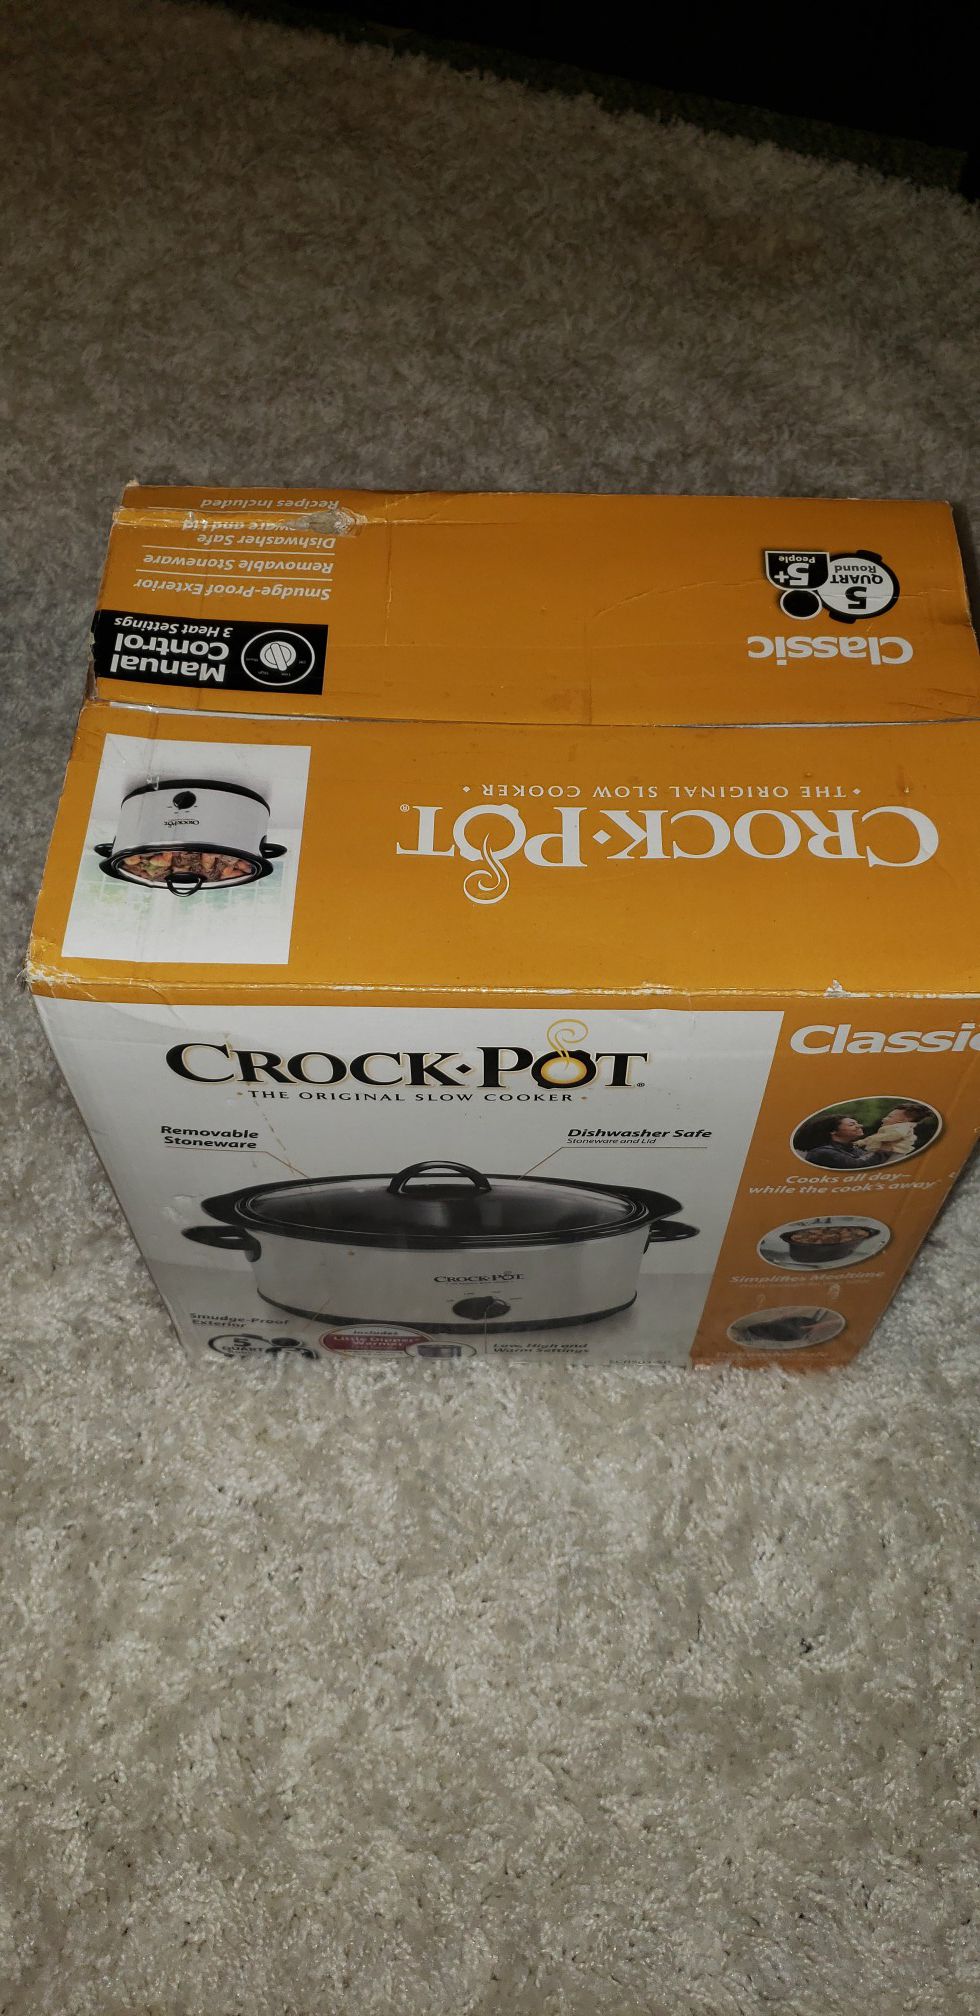 Crock pot the original slow cooker 5 quart